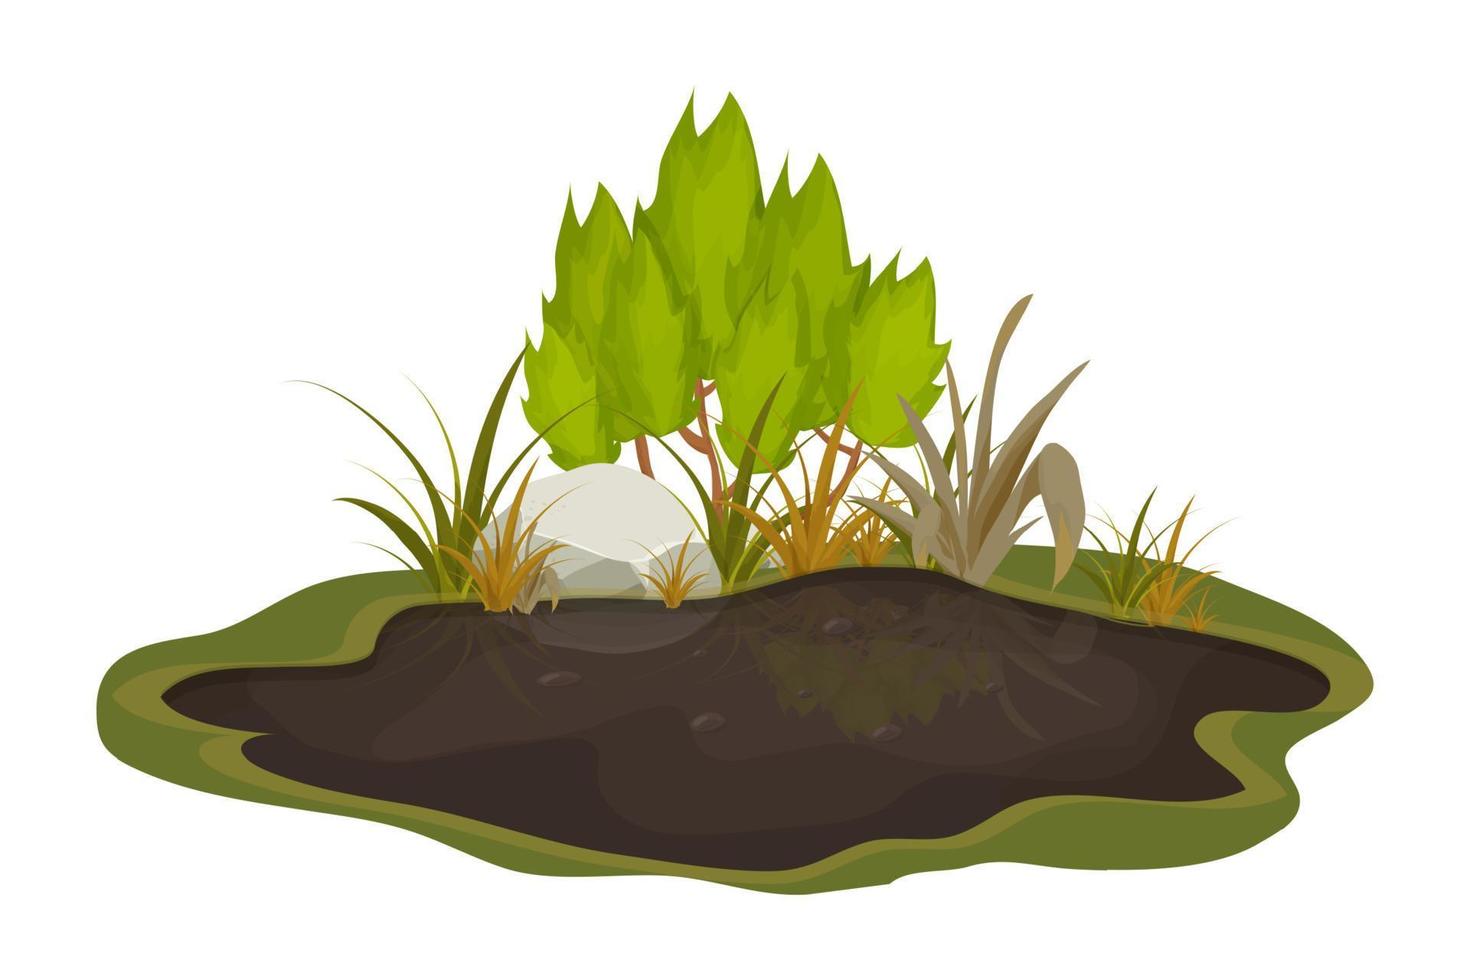 poça de lama suja, pântano com pedra, grama em estilo cartoon, isolado no fundo branco. solo molhado natural, lagoa da floresta, clip-art do lago. . ilustração vetorial vetor